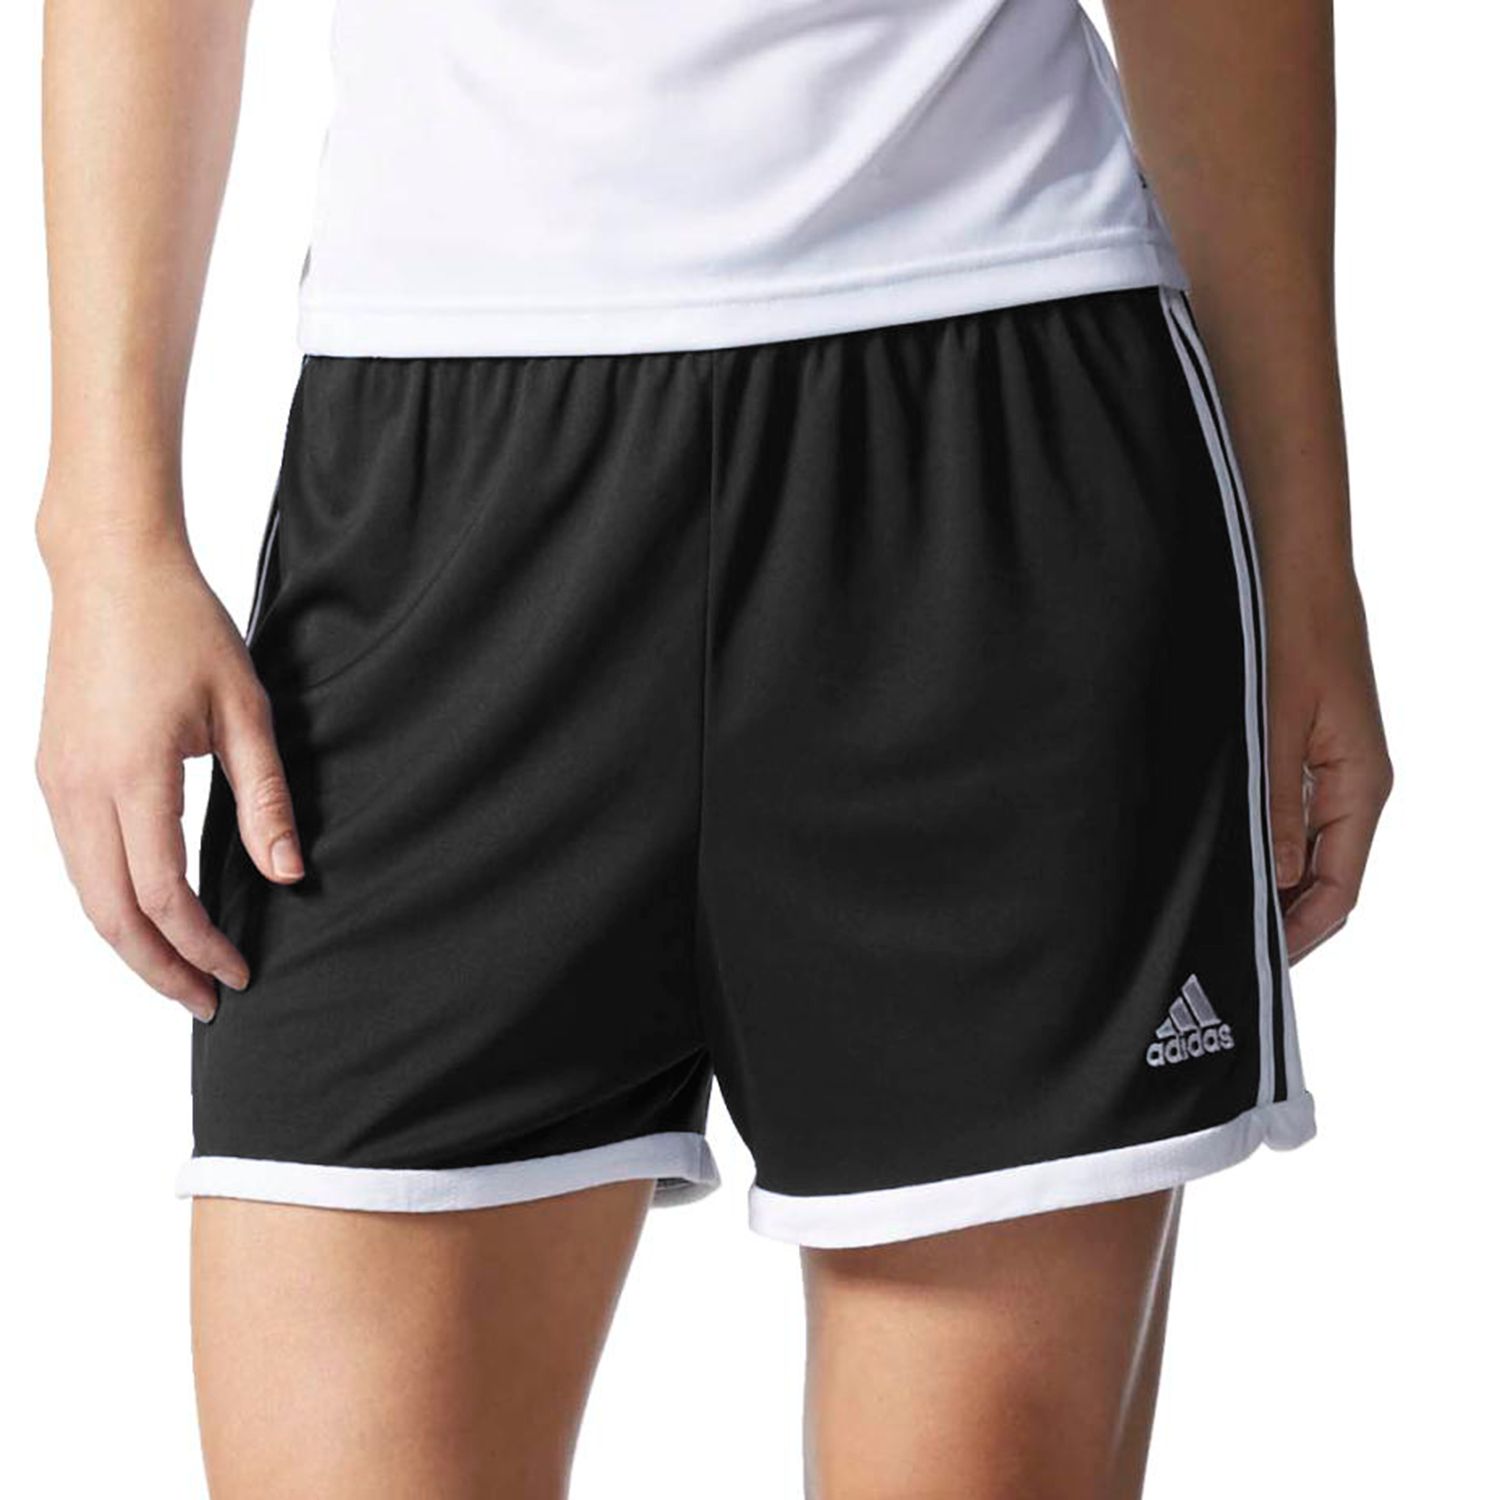 women's adidas tastigo shorts